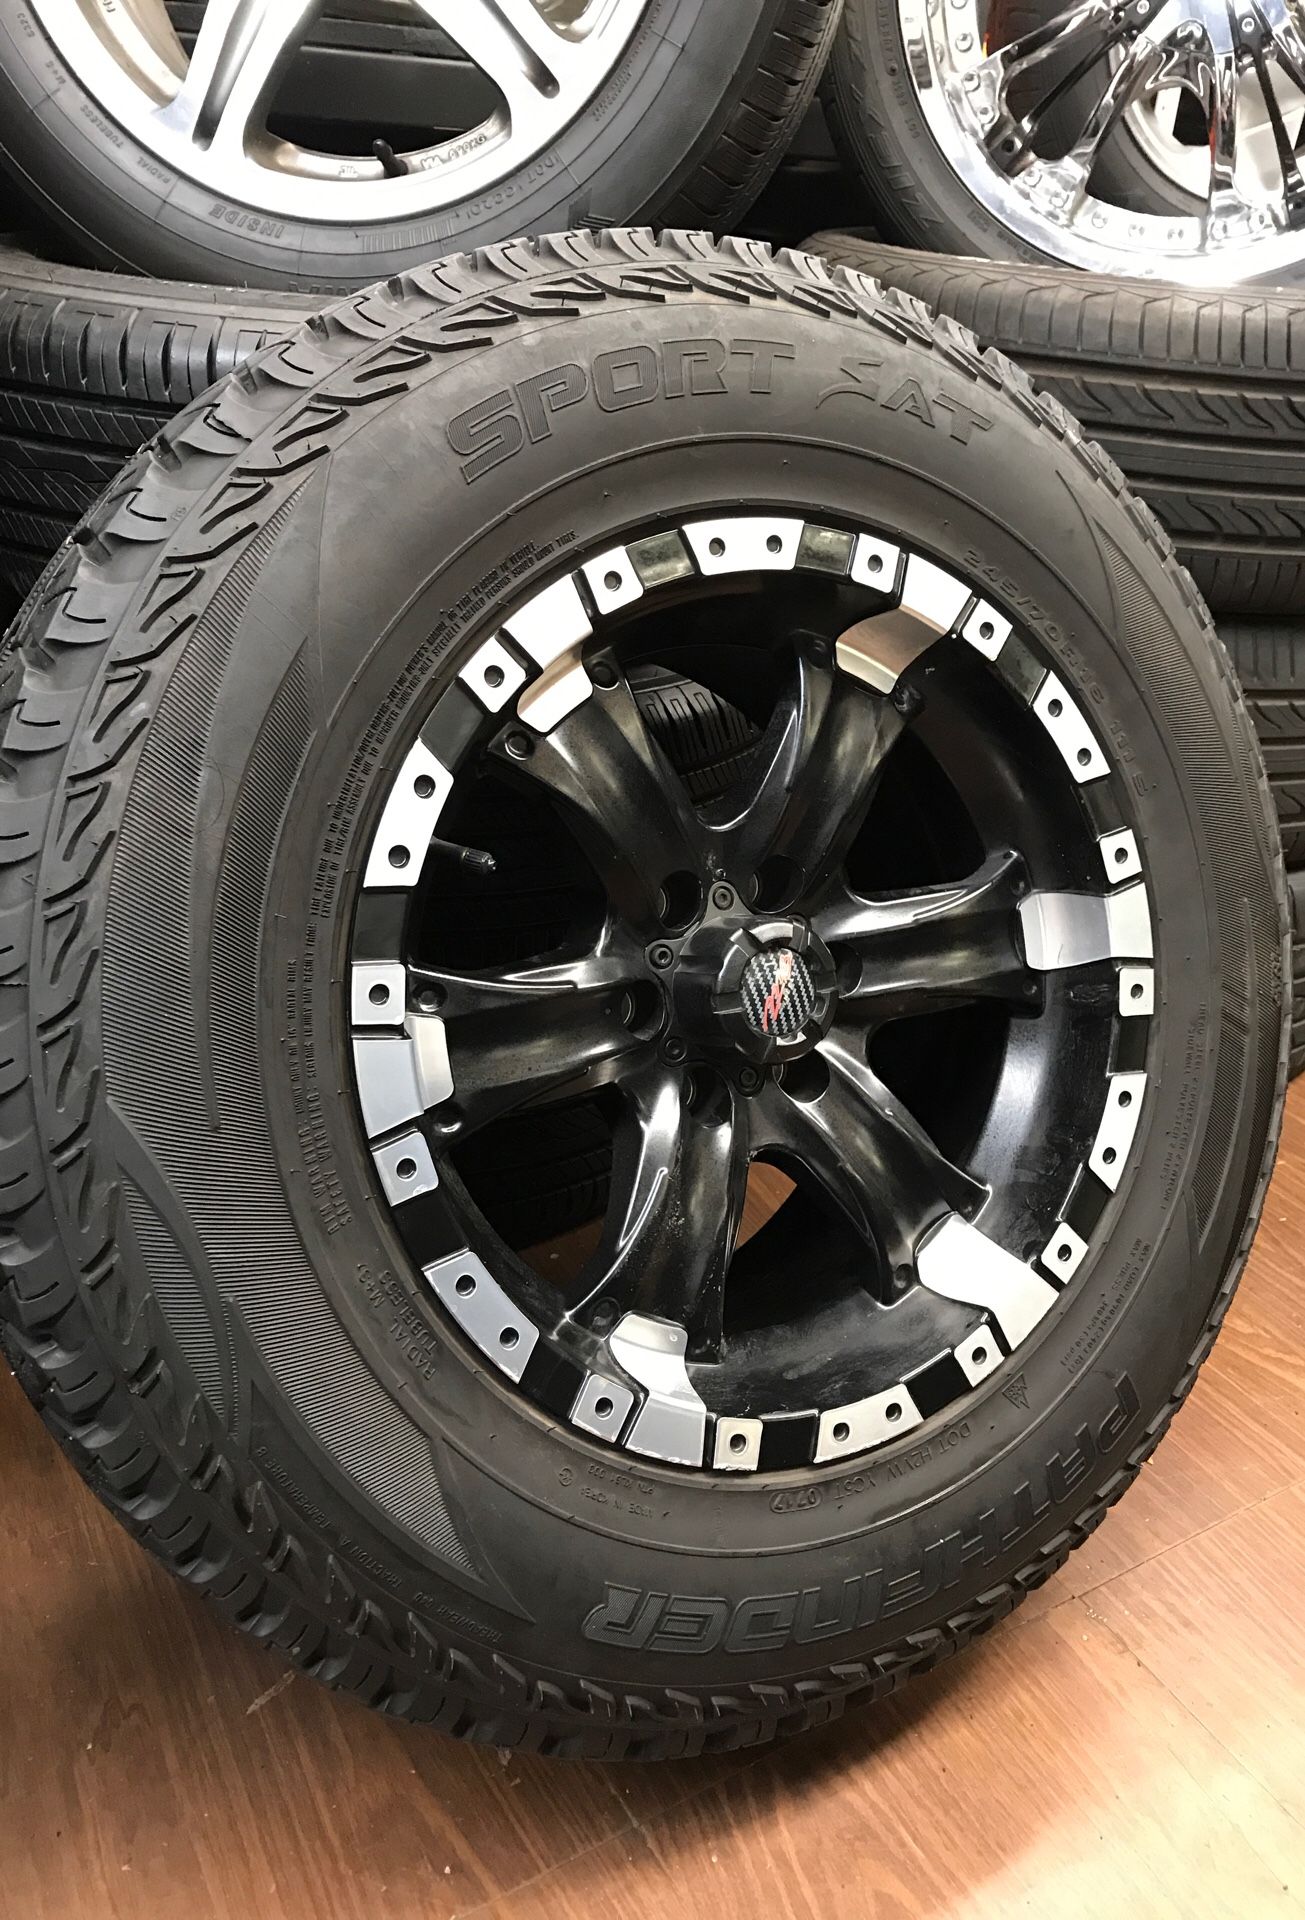 2 16” MB wheels / rims Dodge Nissan Xterra 6x4.5 w/ 245/70/R16 pathfinder sport A/T tires 85%